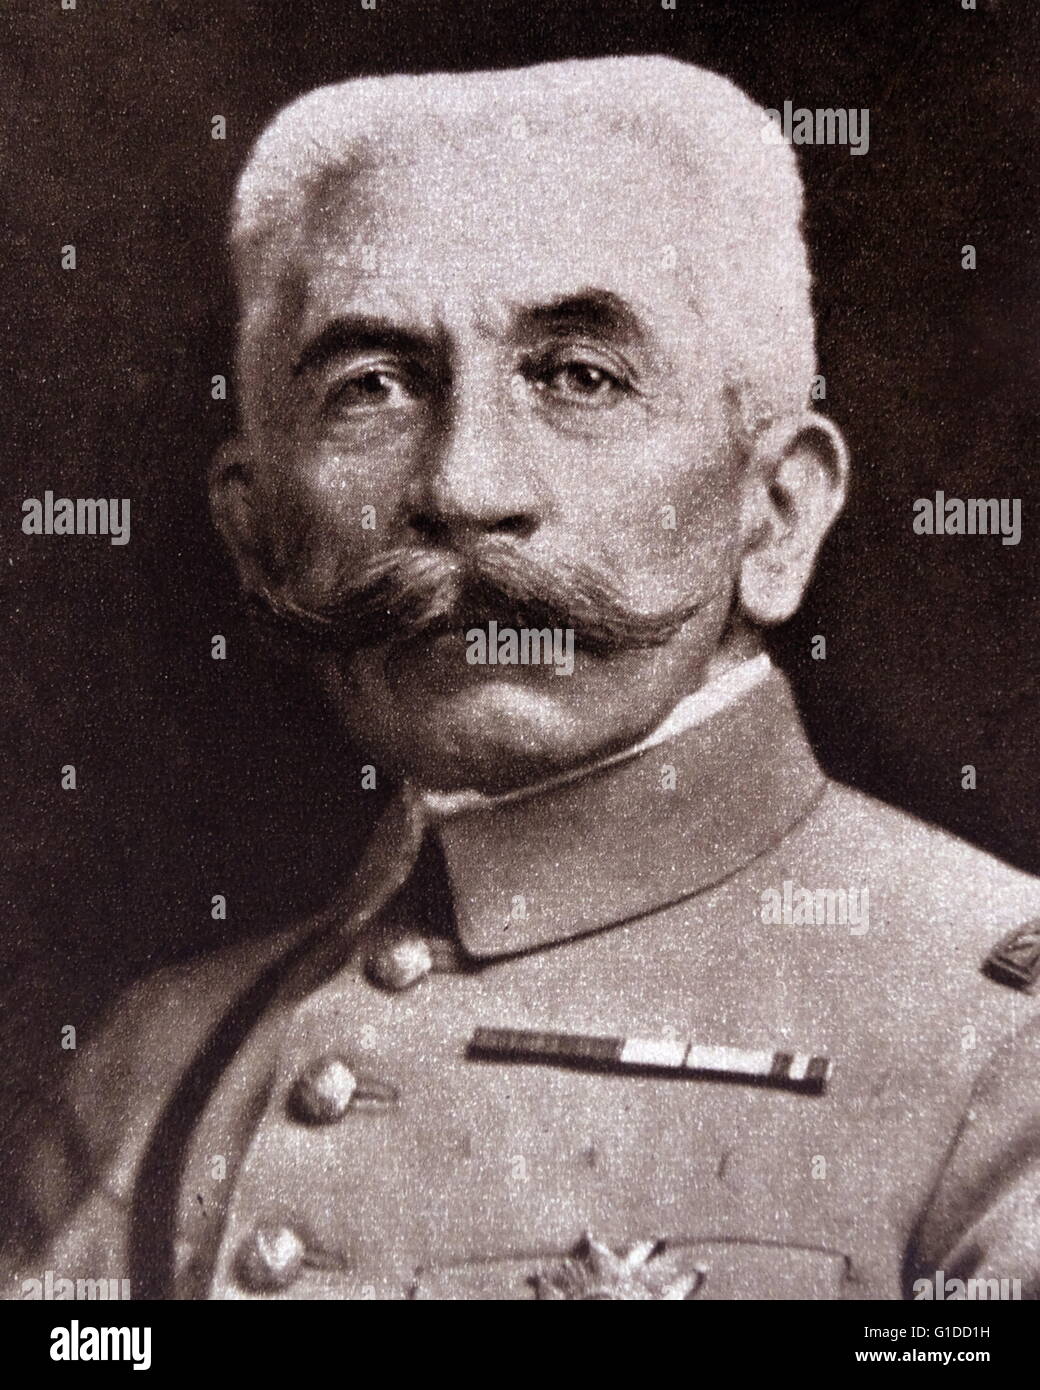 Louis Lyautey (17 novembre 1854 - 21 luglio 1934) è stato un generale dell esercito francese e amministratore coloniale. Dopo aver prestato servizio in Indocina e Madagascar, divenne il primo Resident-General francese in Marocco dal 1912 al 1925. Foto Stock